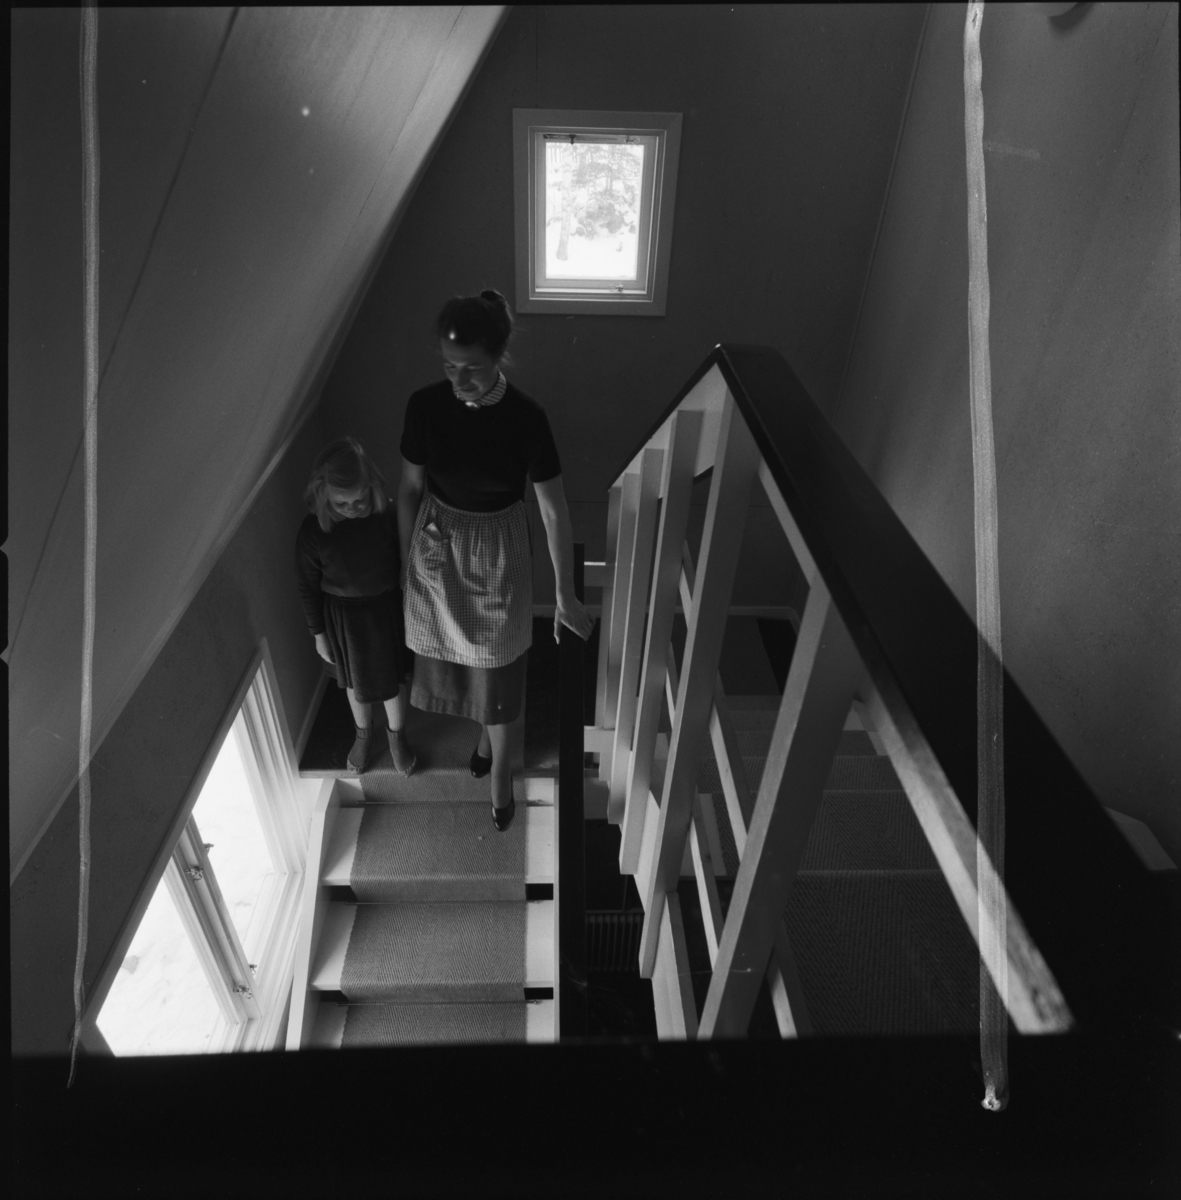 villa Ahlgren
Interiör, kvinna som går med litet barn uppför trappa.